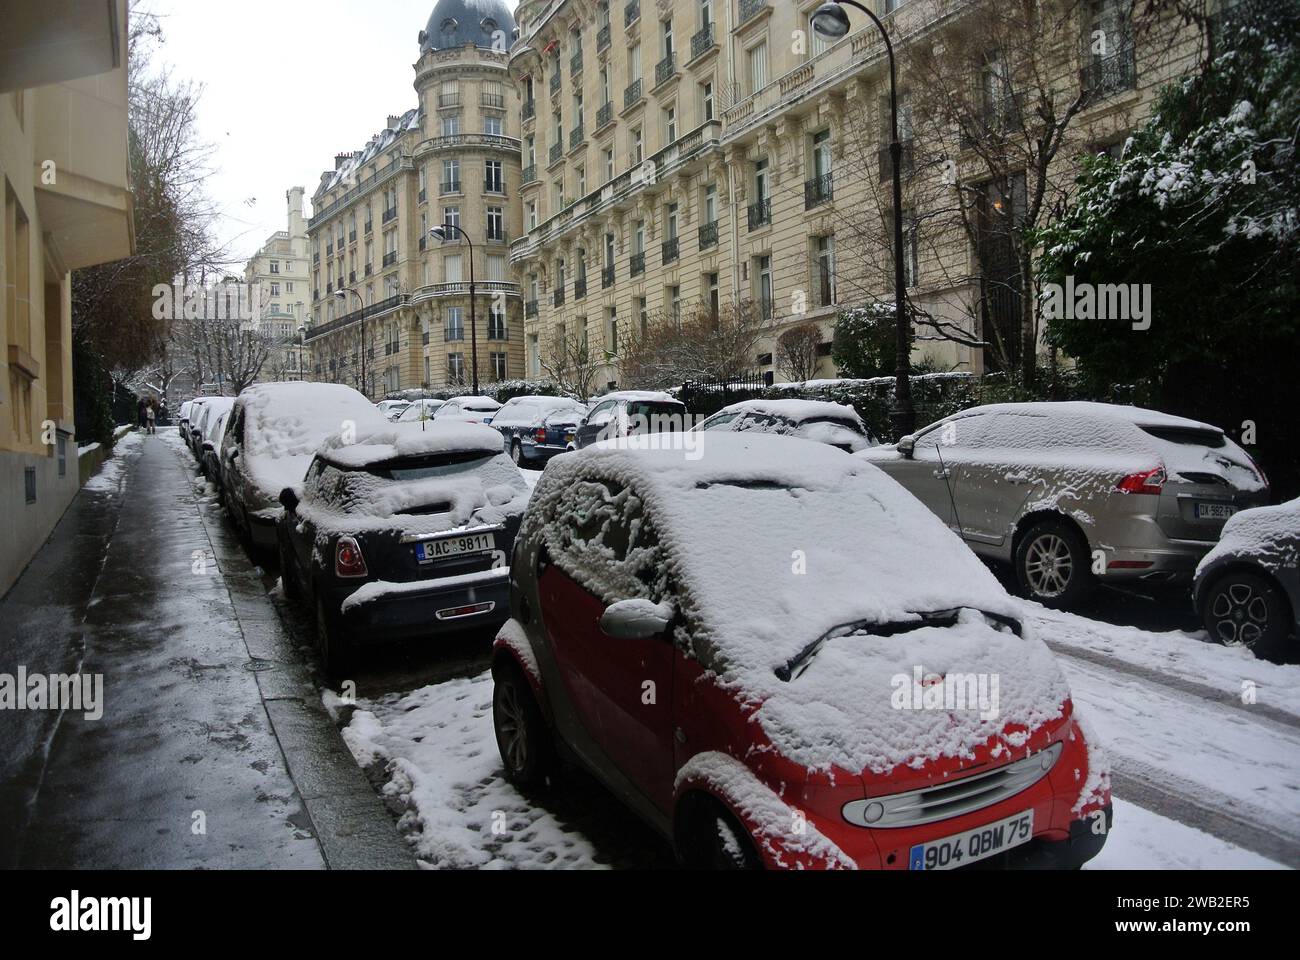 En février 2018, la neige tombe à Paris. Une rue déserte avec des voitures couvertes de neige. Banque D'Images